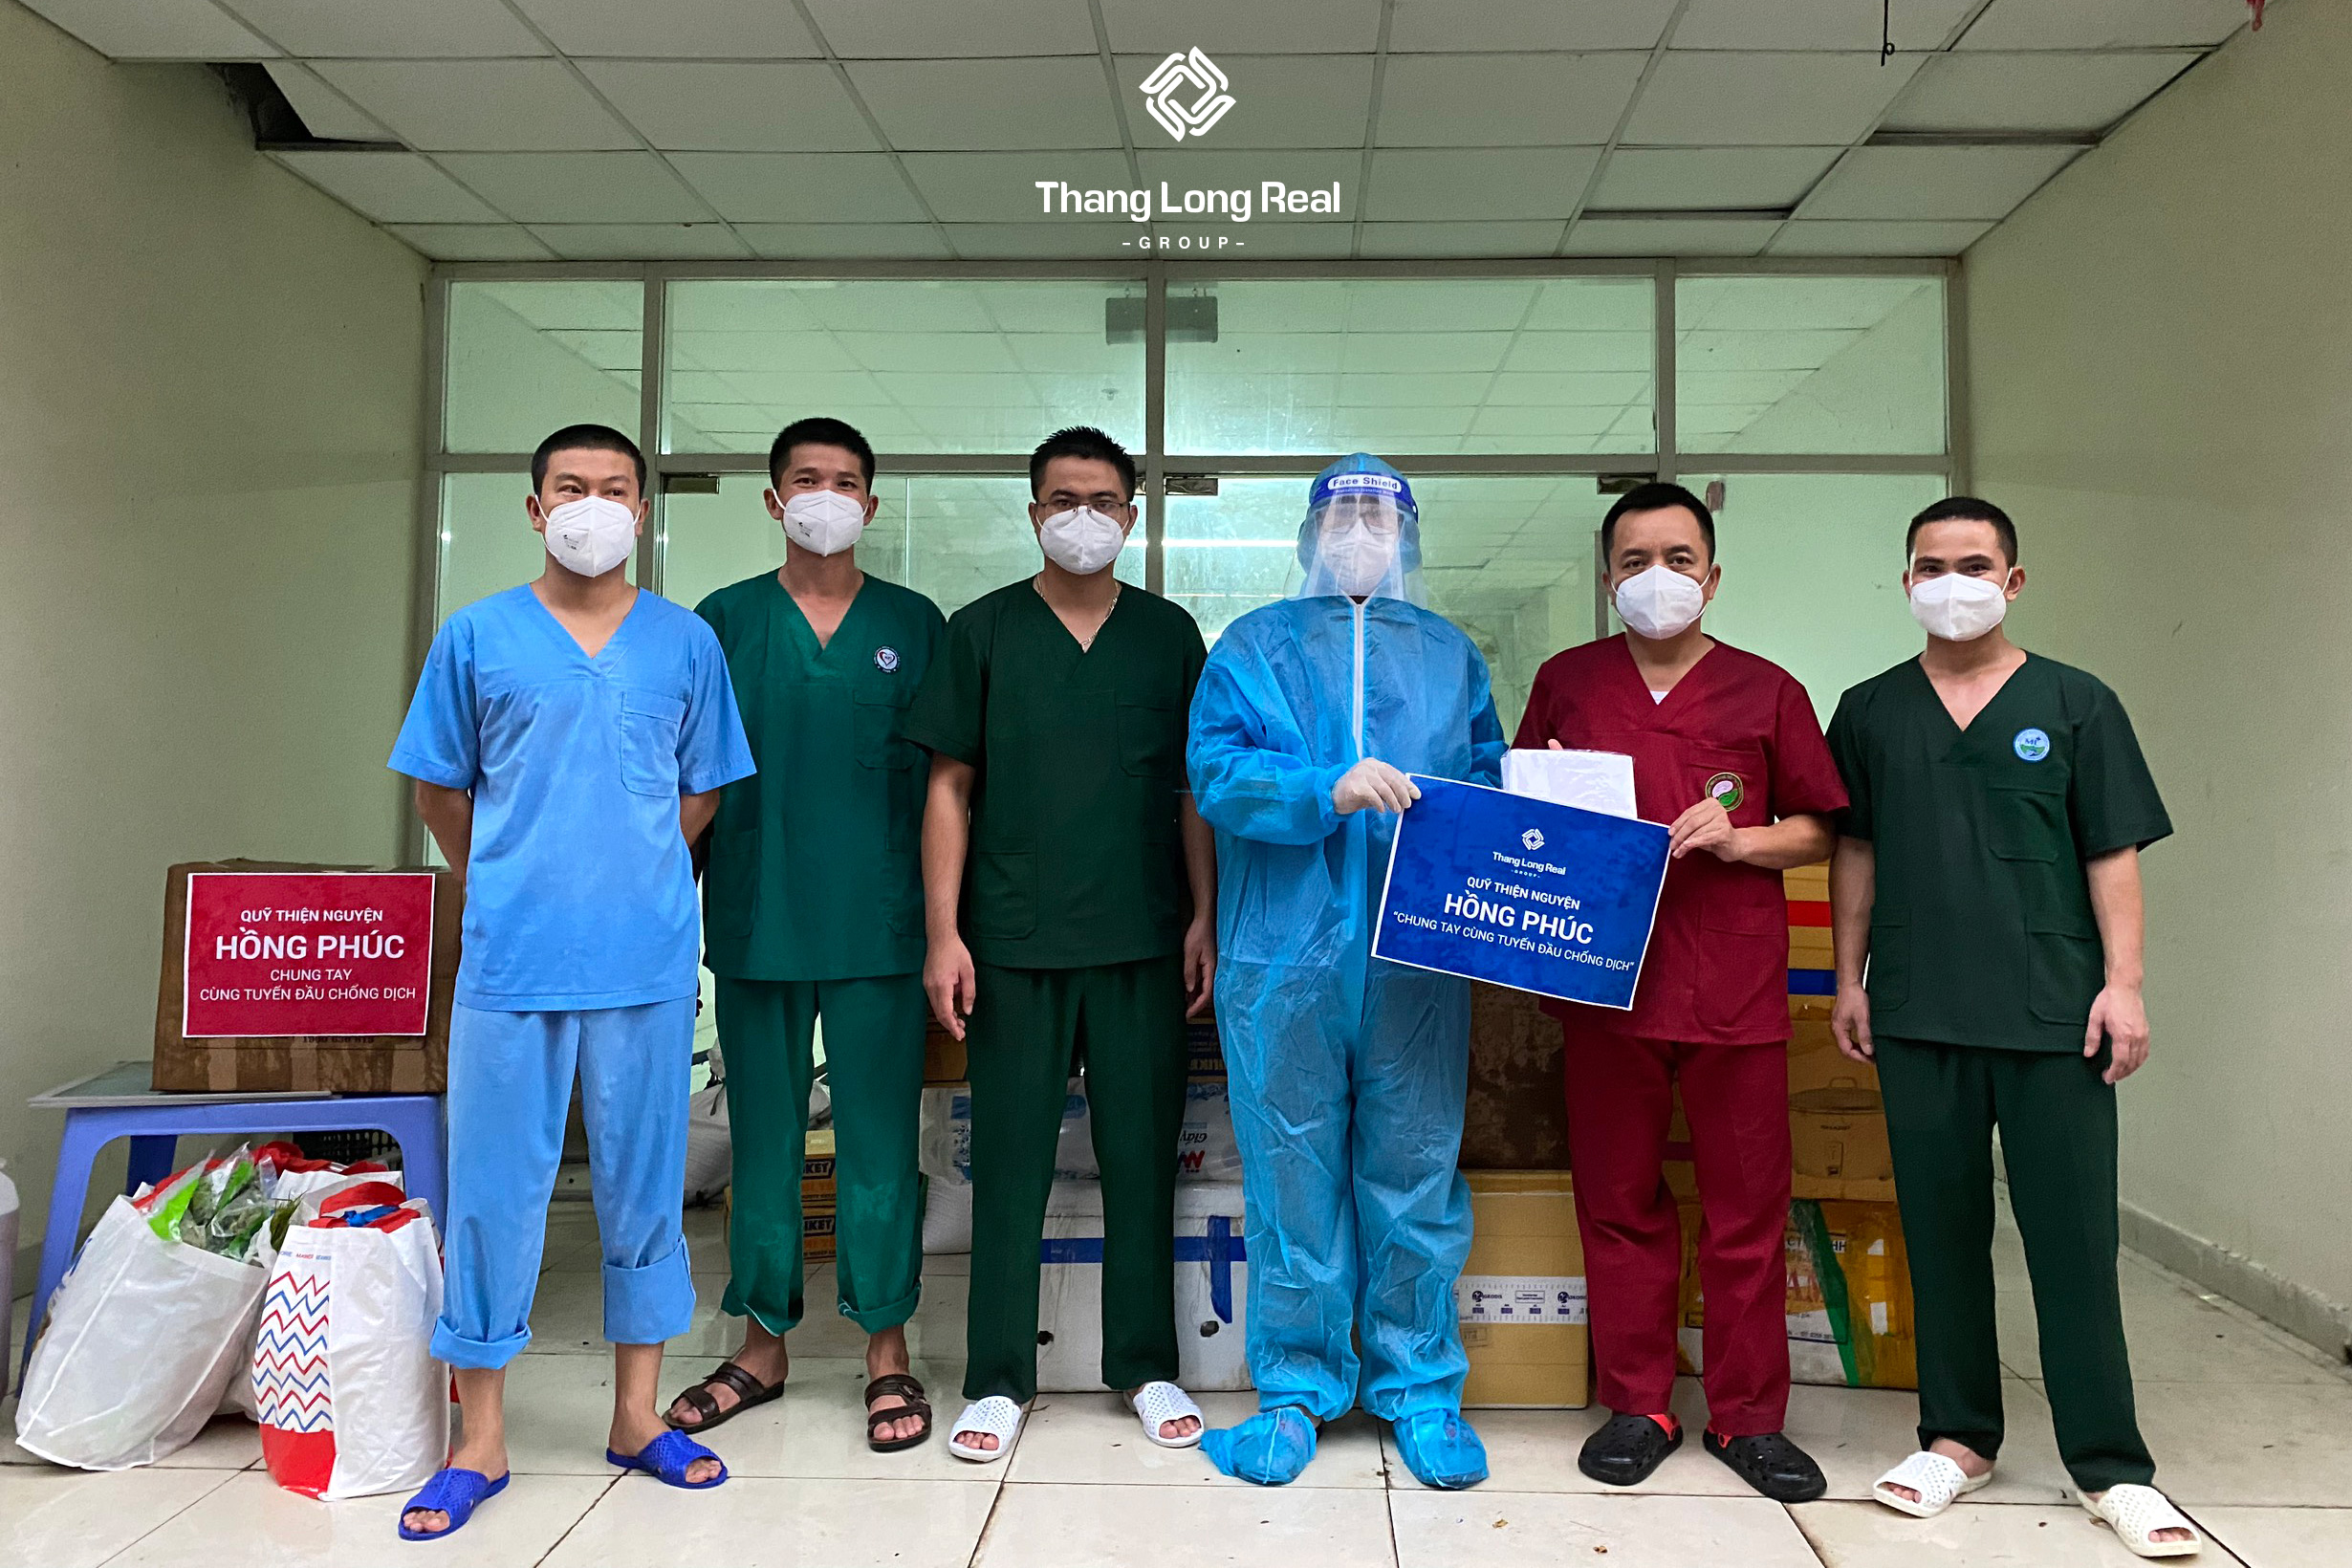 Quỹ thiện nguyện Hồng Phúc hỗ trợ các bác sĩ tuyến đầu chống dịch của tỉnh Sơn La